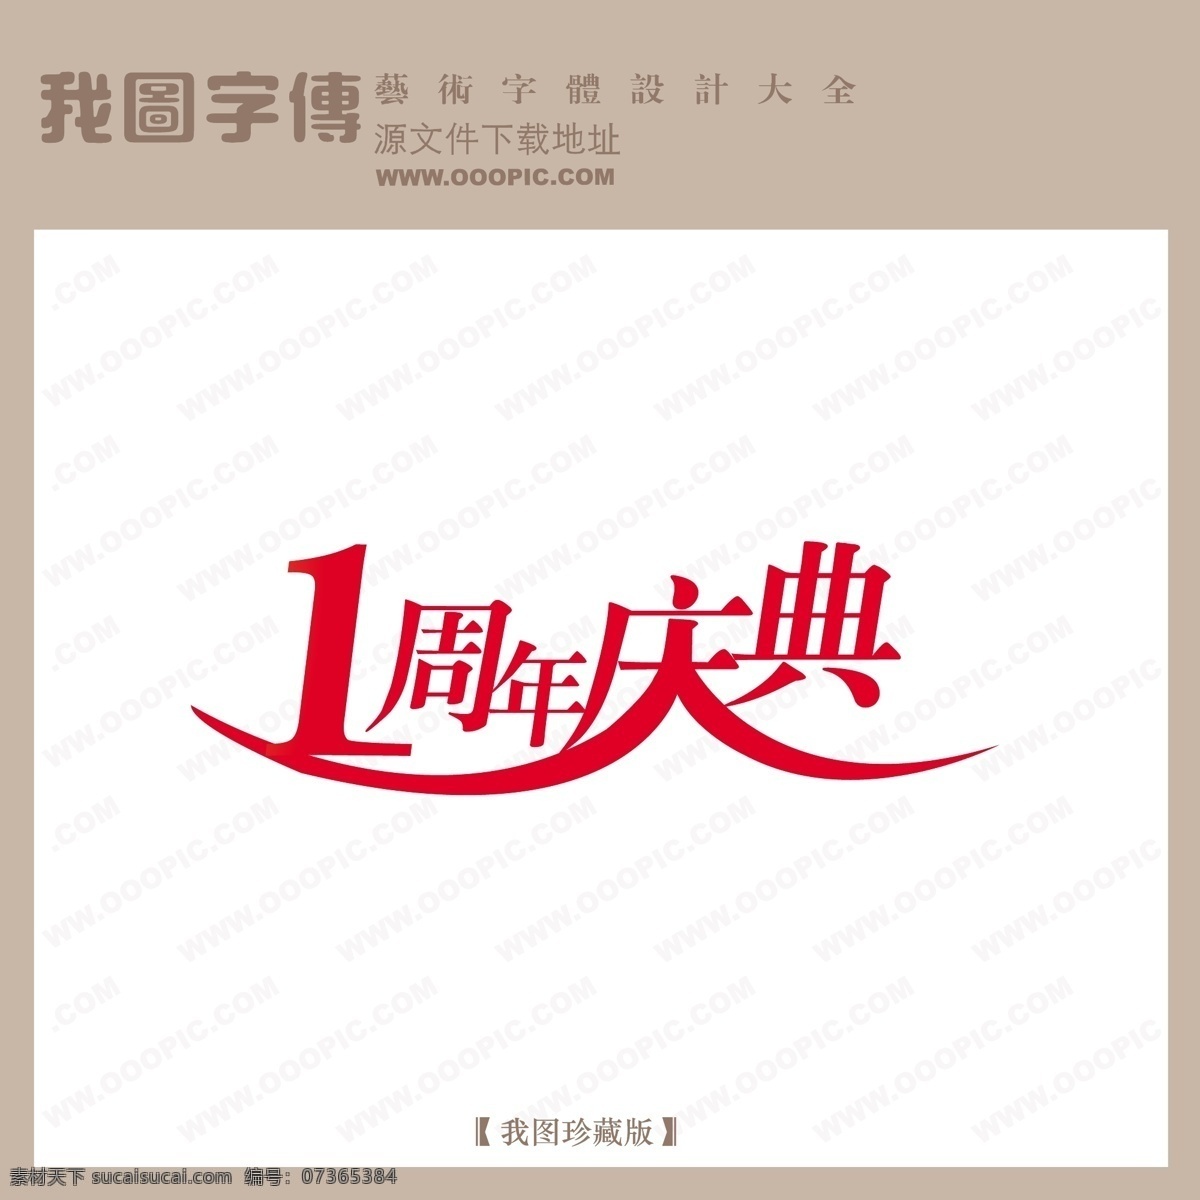 周年庆典 商场 艺术 字 中文 现代艺术 中国 字体 1周年庆典 创意 美工 商场艺术字 中国字体设计 矢量图